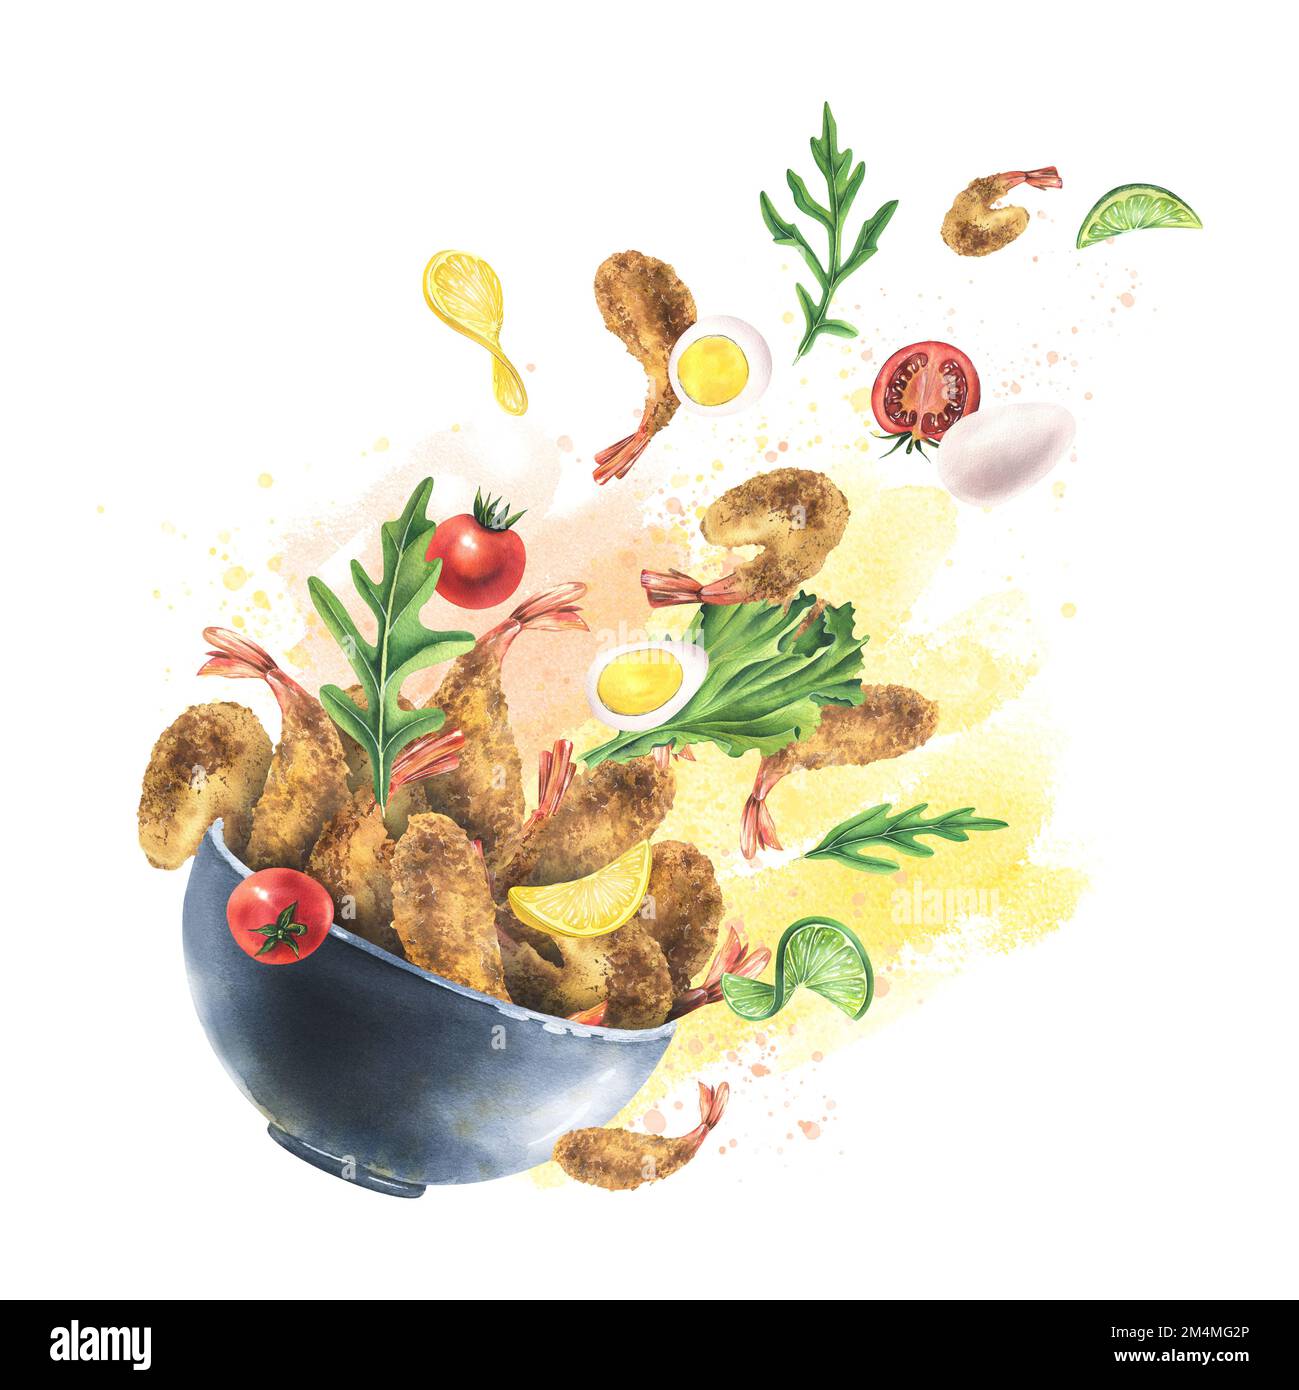 Crevettes panées, tempura dans un bol en céramique avec des arugula, des tomates cerises, des œufs de caille, de la lime et du citron. Illustration aquarelle. Composition de la lévitation Banque D'Images